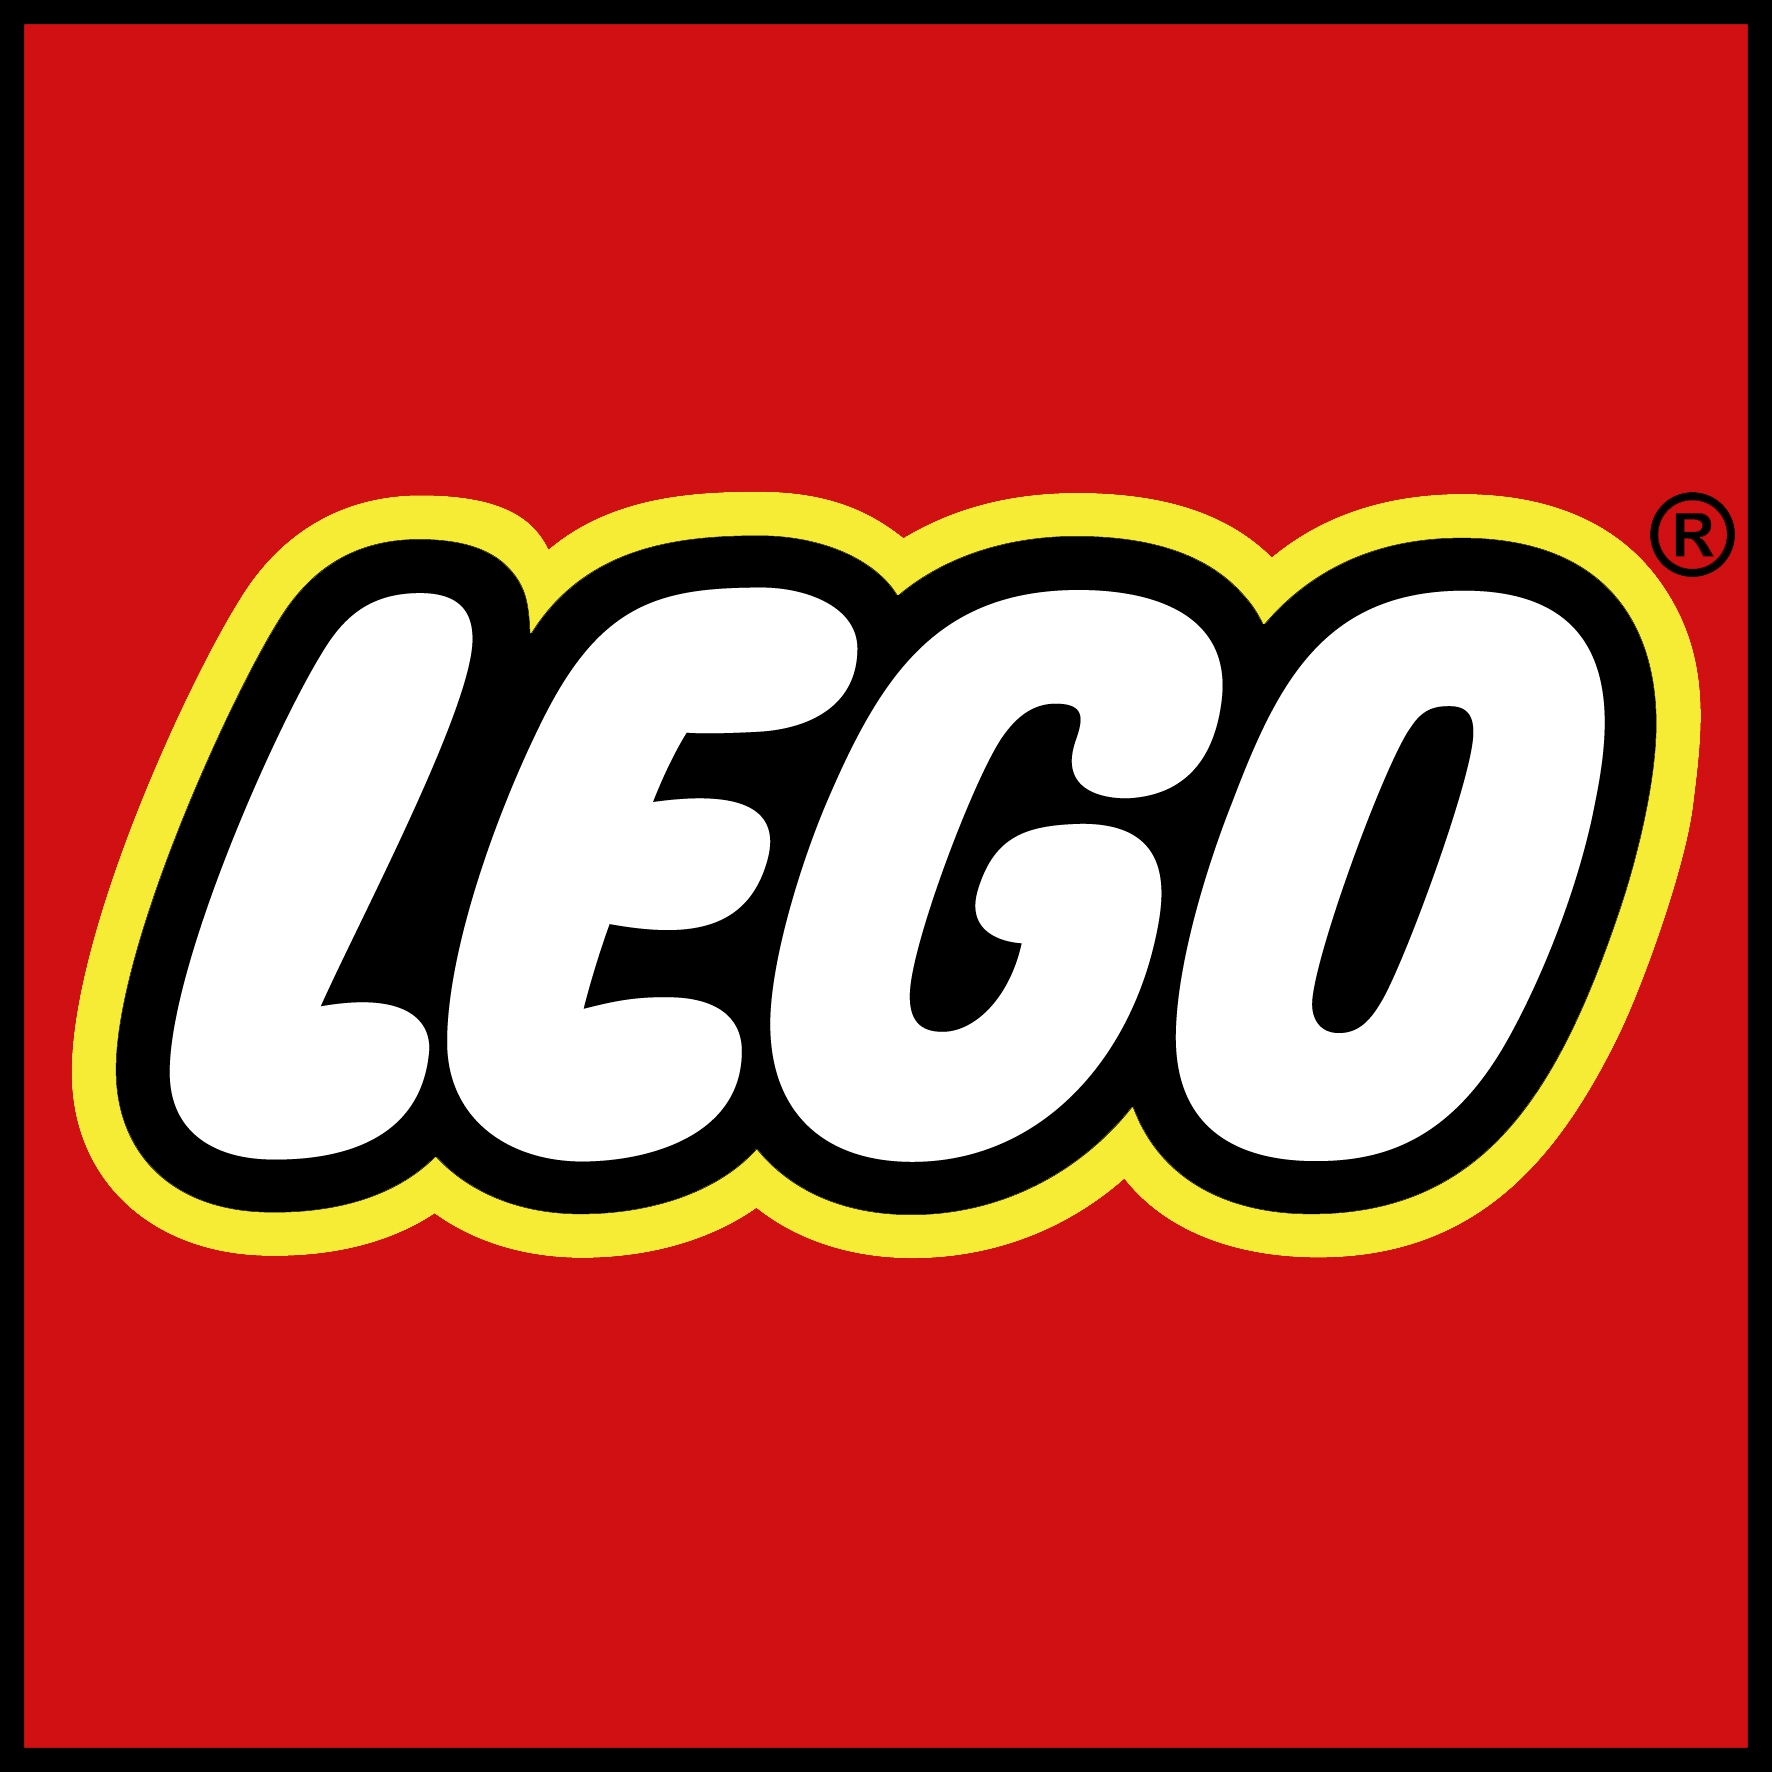 логотип бренда LEGO